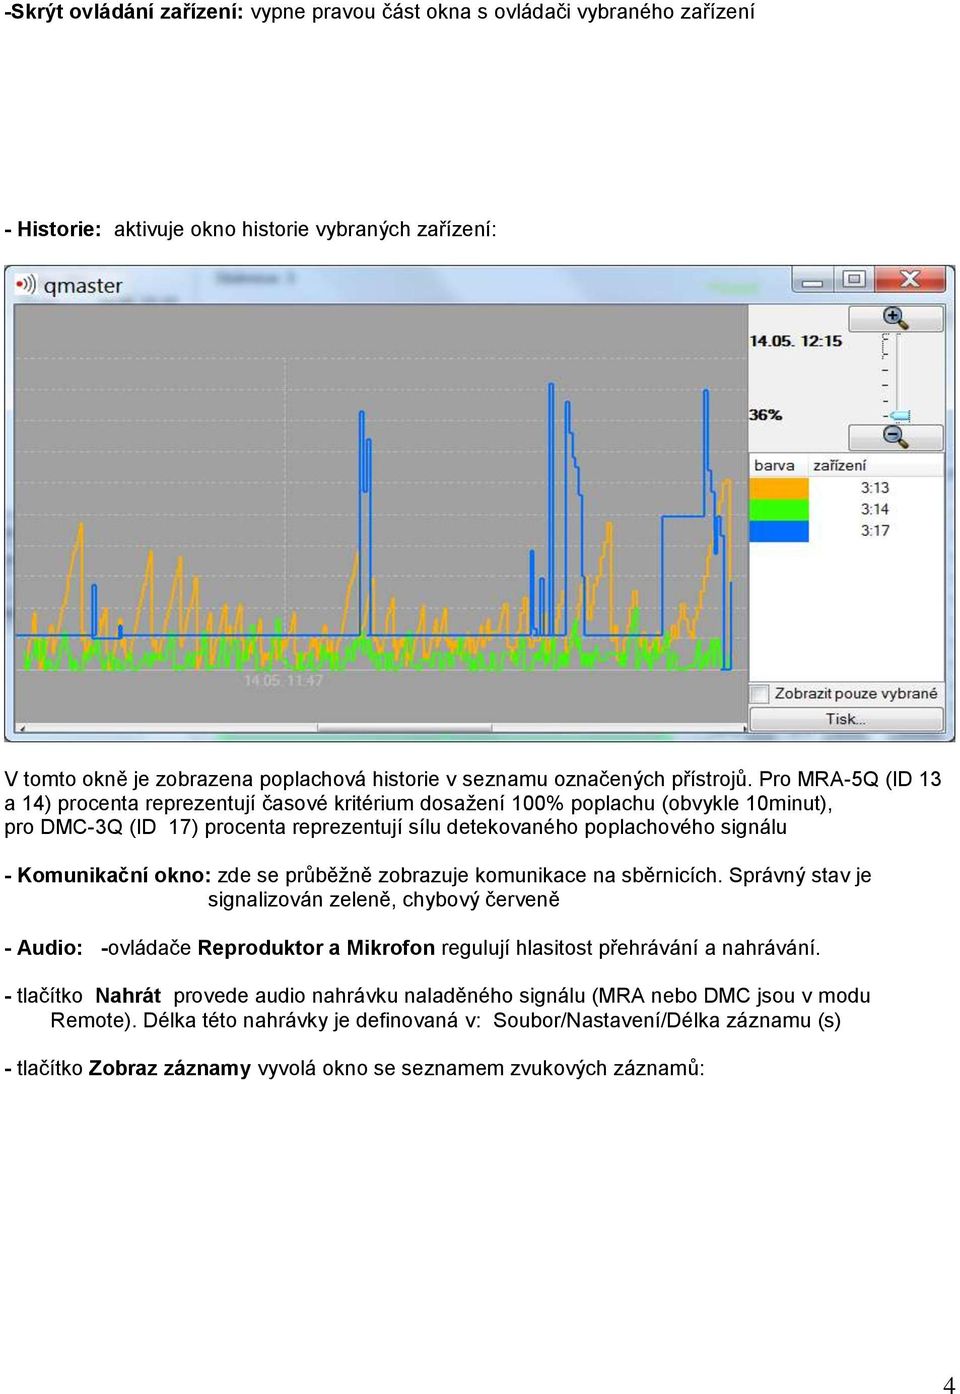 Pro MRA-5Q (ID 13 a 14) procenta reprezentují časové kritérium dosažení 100% poplachu (obvykle 10minut), pro DMC-3Q (ID 17) procenta reprezentují sílu detekovaného poplachového signálu - Komunikační